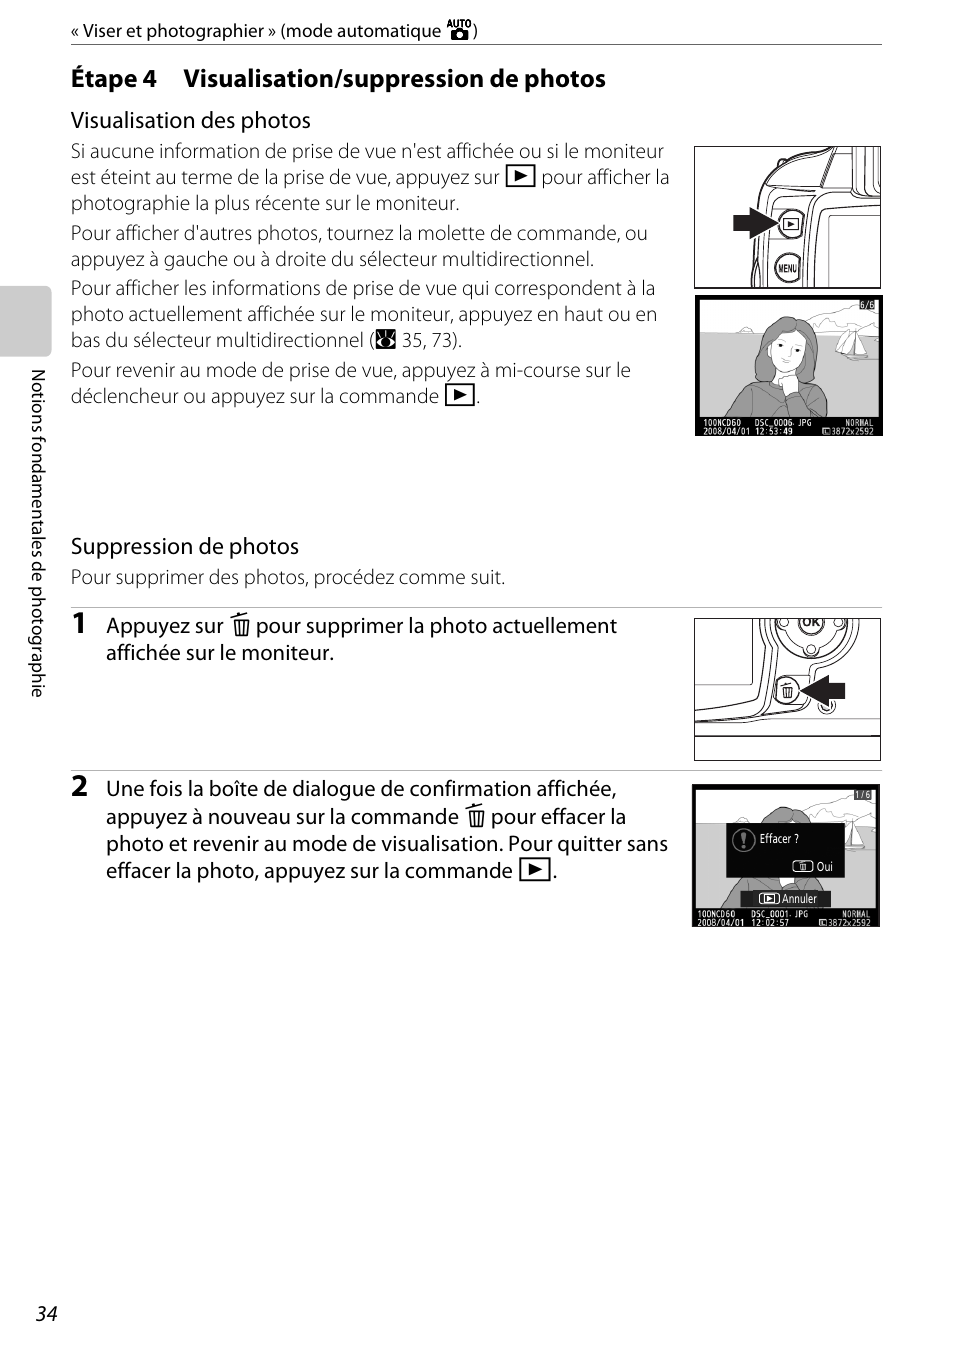 Étape 4 visualisation/suppression de photos, Étape 4, Visualisation/suppression de photos | Nikon D60 Manuel d'utilisation | Page 46 / 204